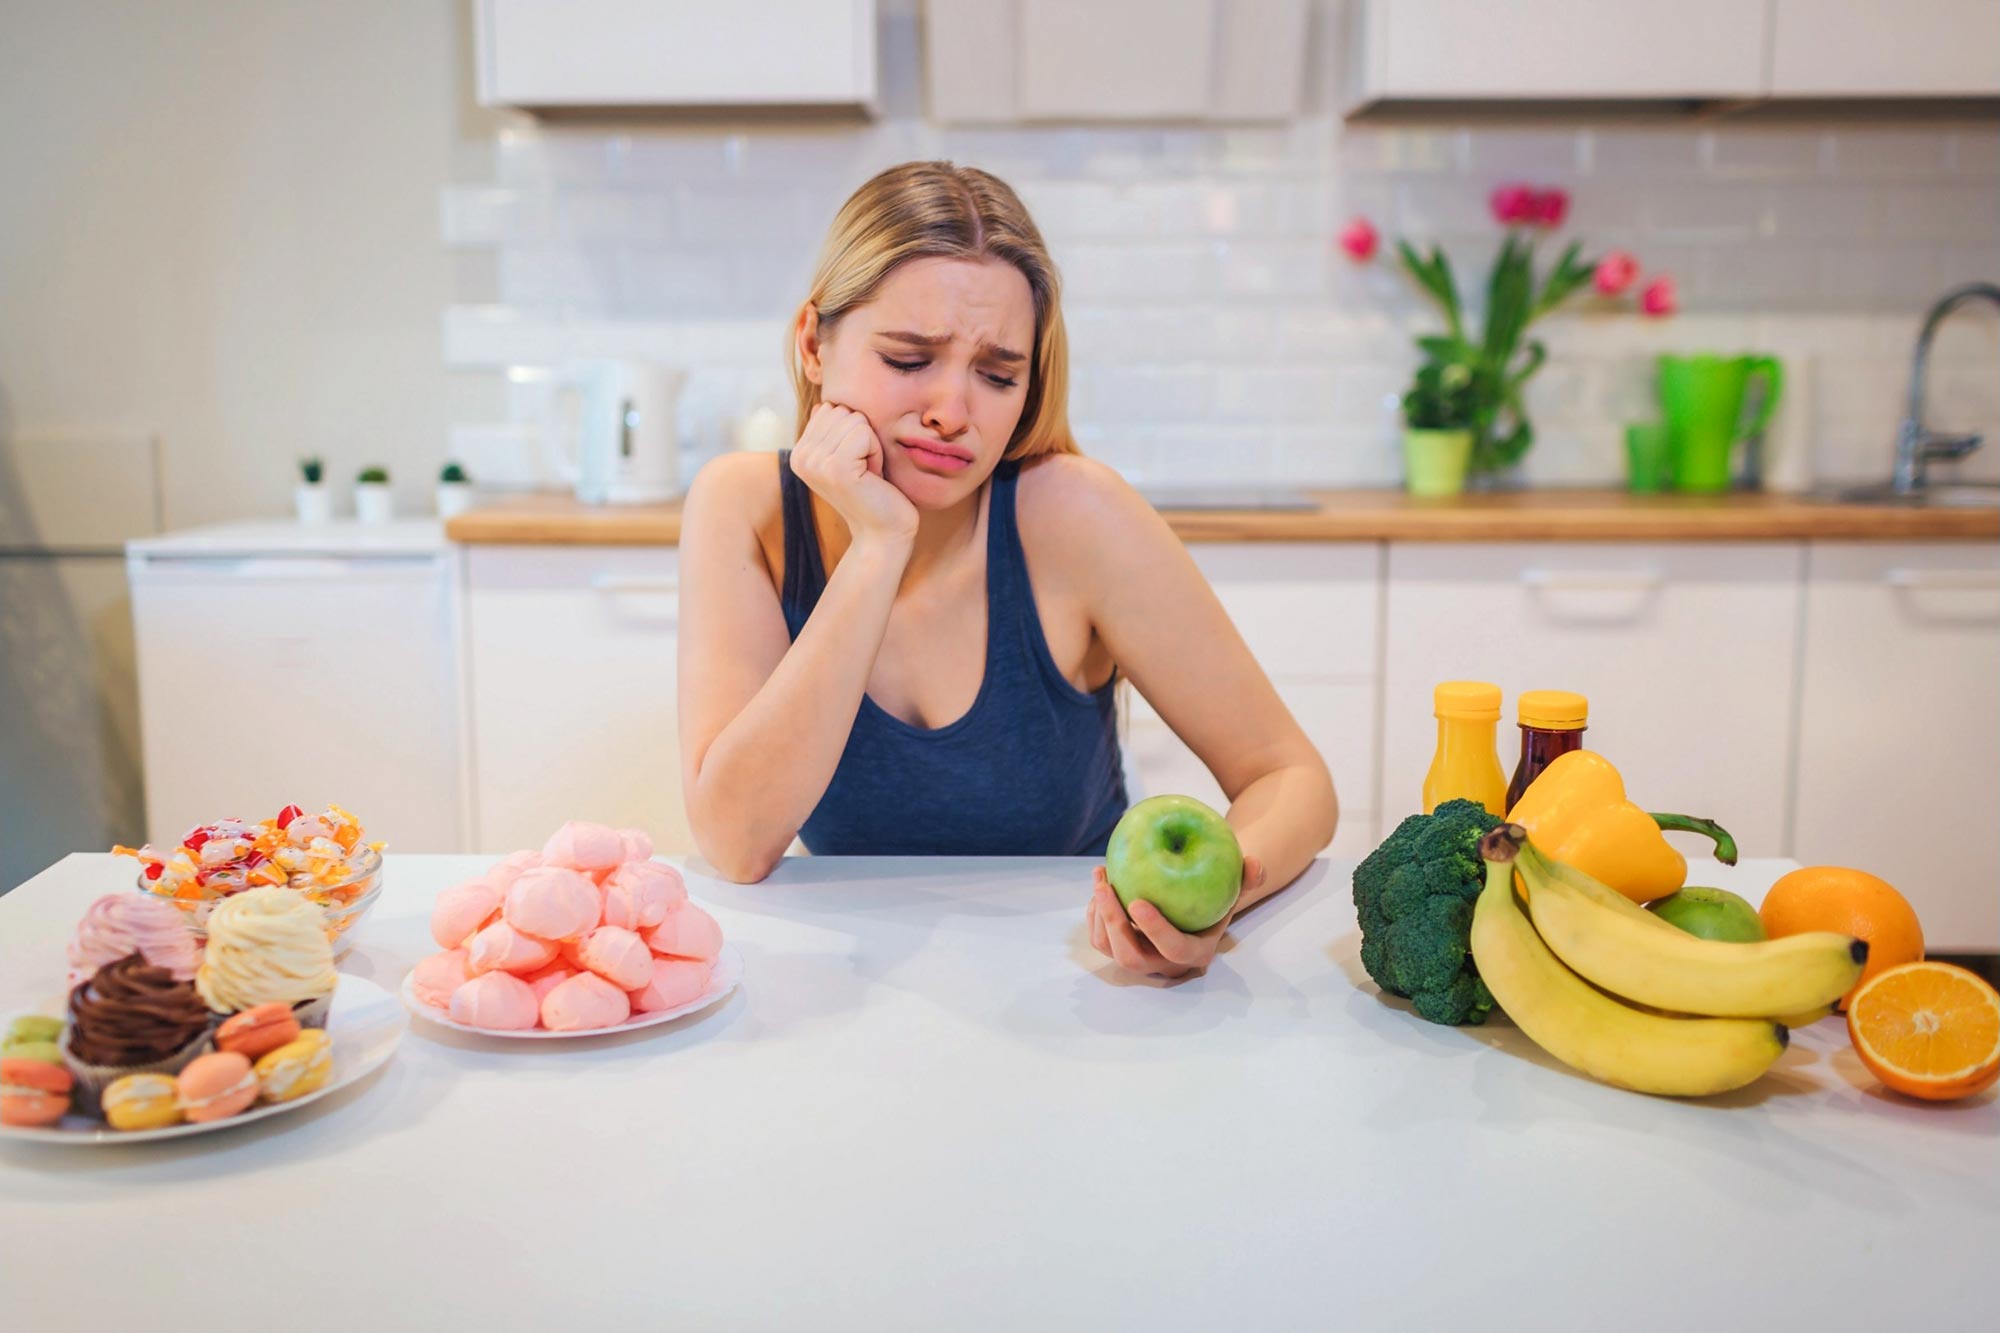 Women's diet combats healthy, unhealthy foods